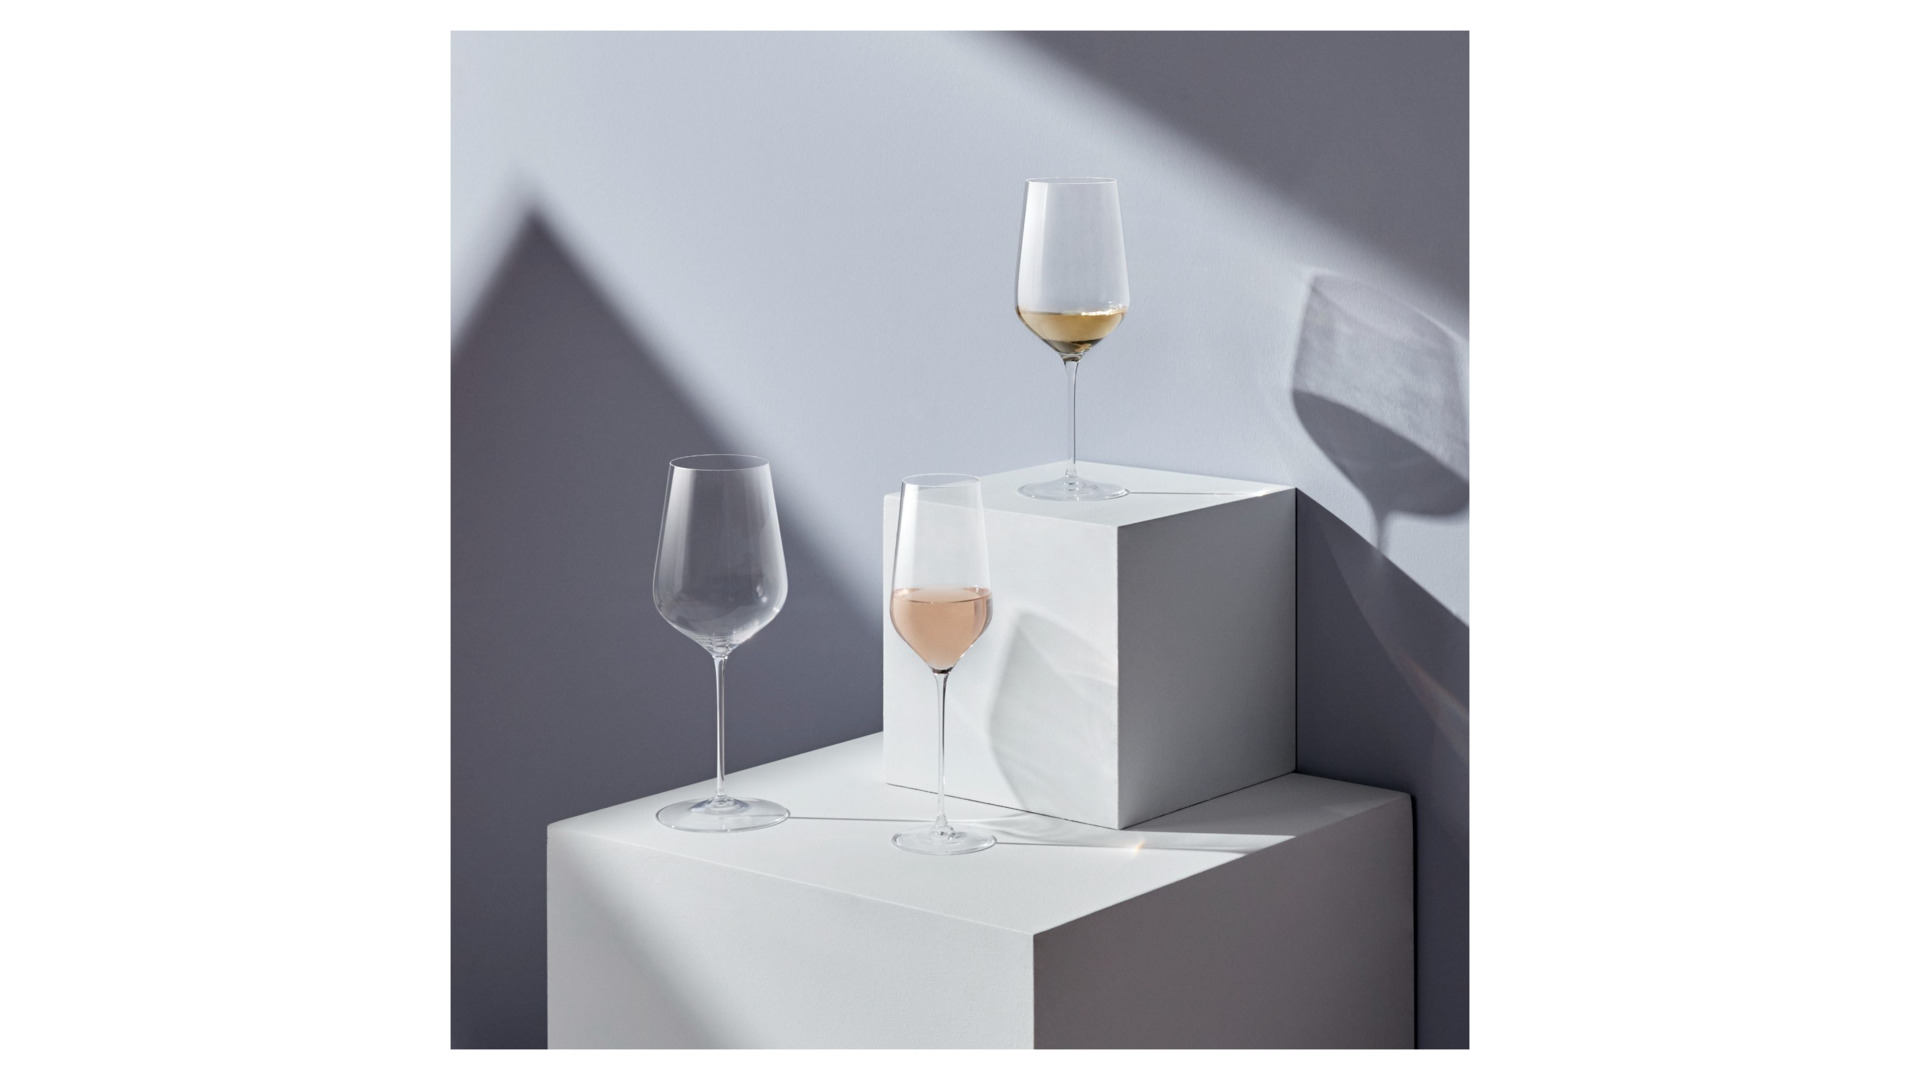 Бокал для шампанского Nude Glass Невидимая ножка Трио 285 мл, стекло стекло хрустальноеное